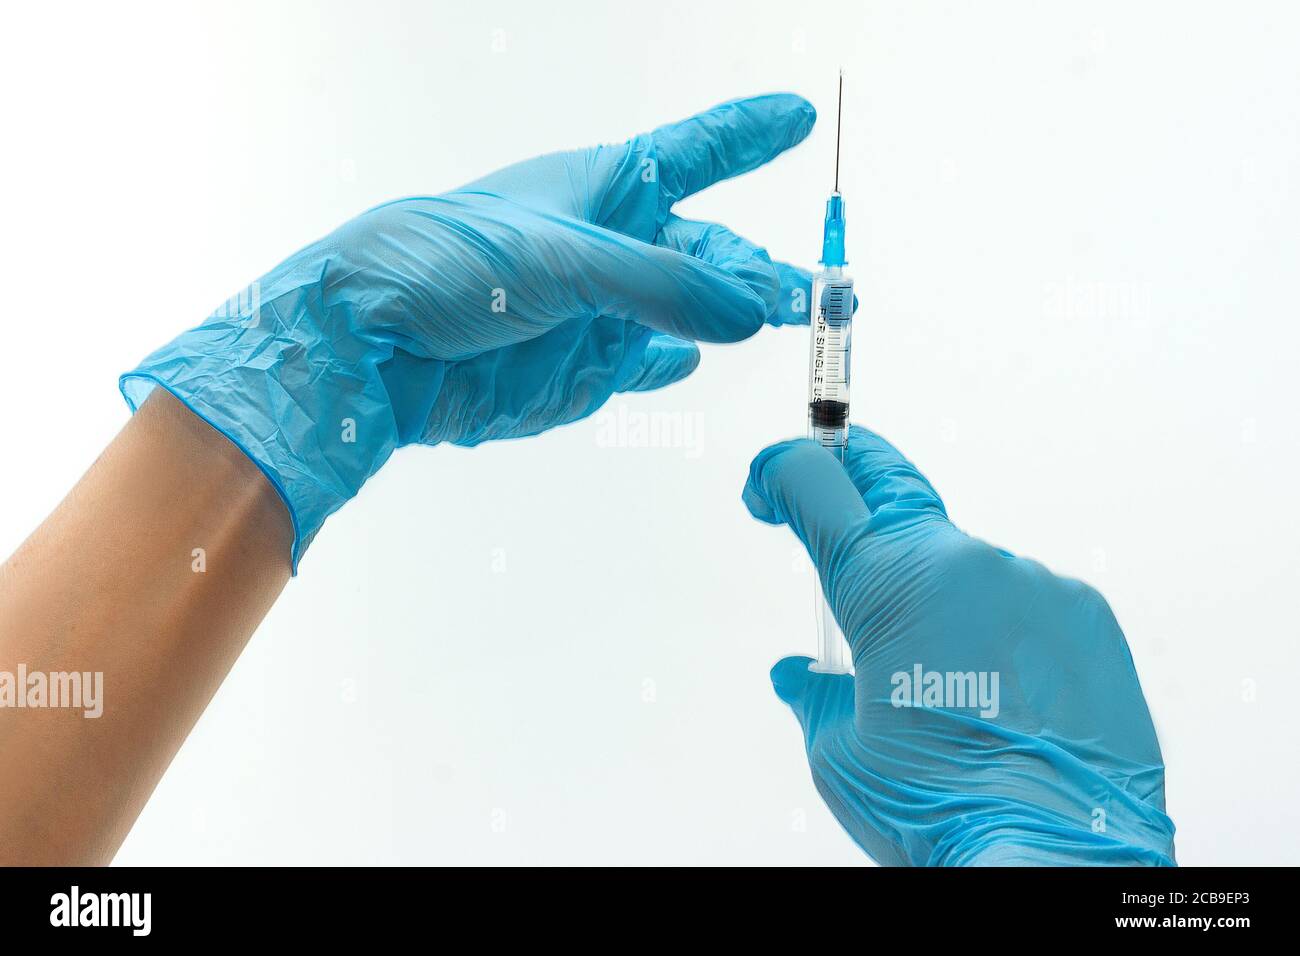 Mains de médecin dans les gants en latex bleu holding syringe. Objets isolé sur fond blanc Banque D'Images